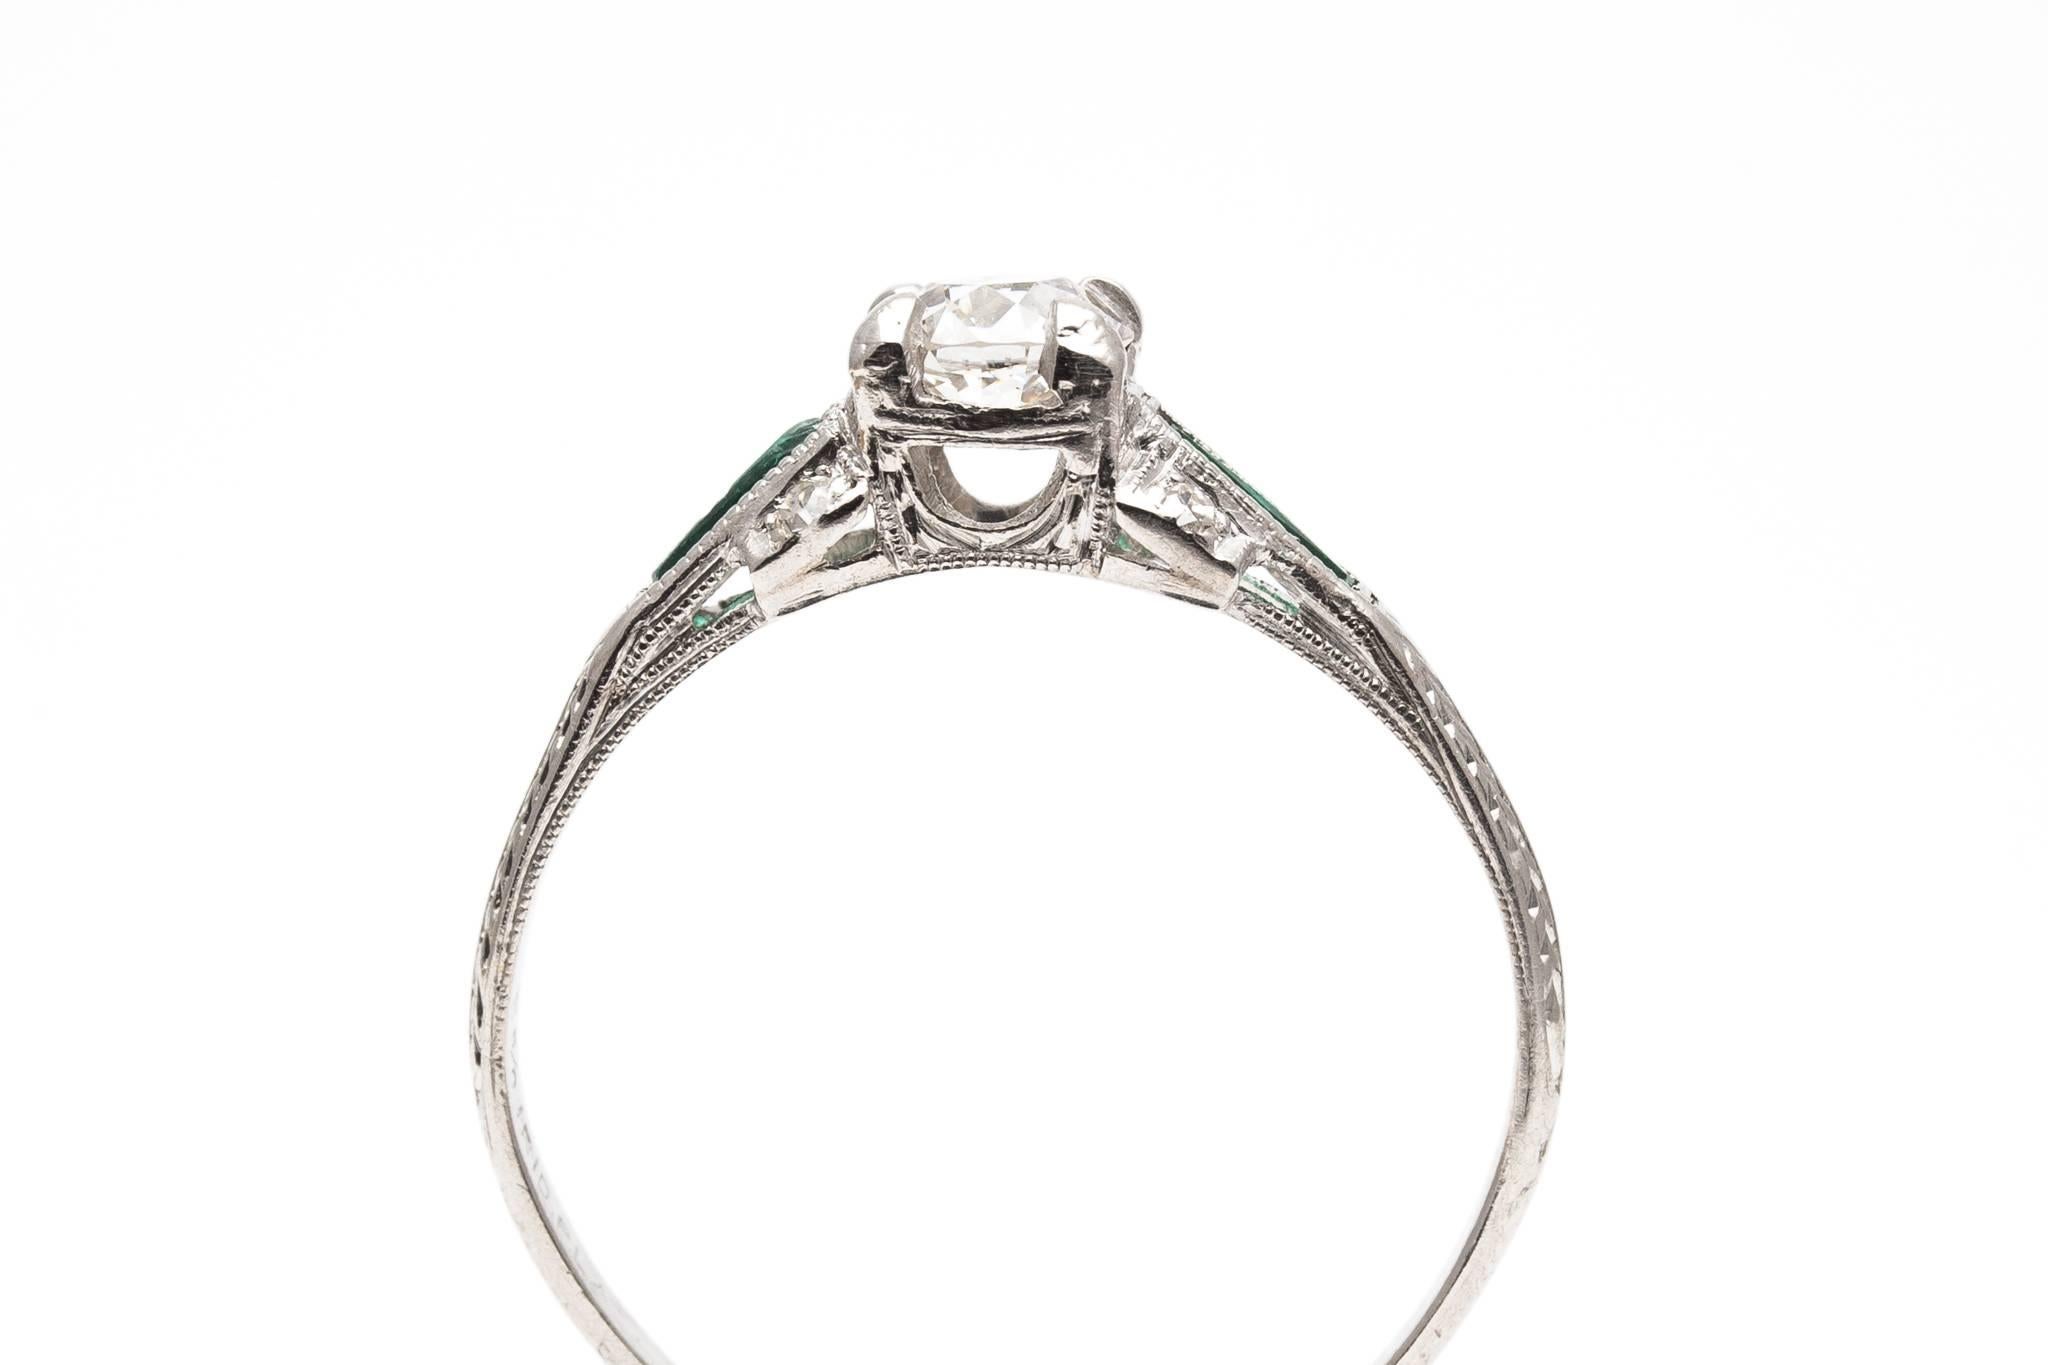 Art Deco Period 0.62 Carat Diamond, Emerald Engagement Ring in Platinum For Sale 1